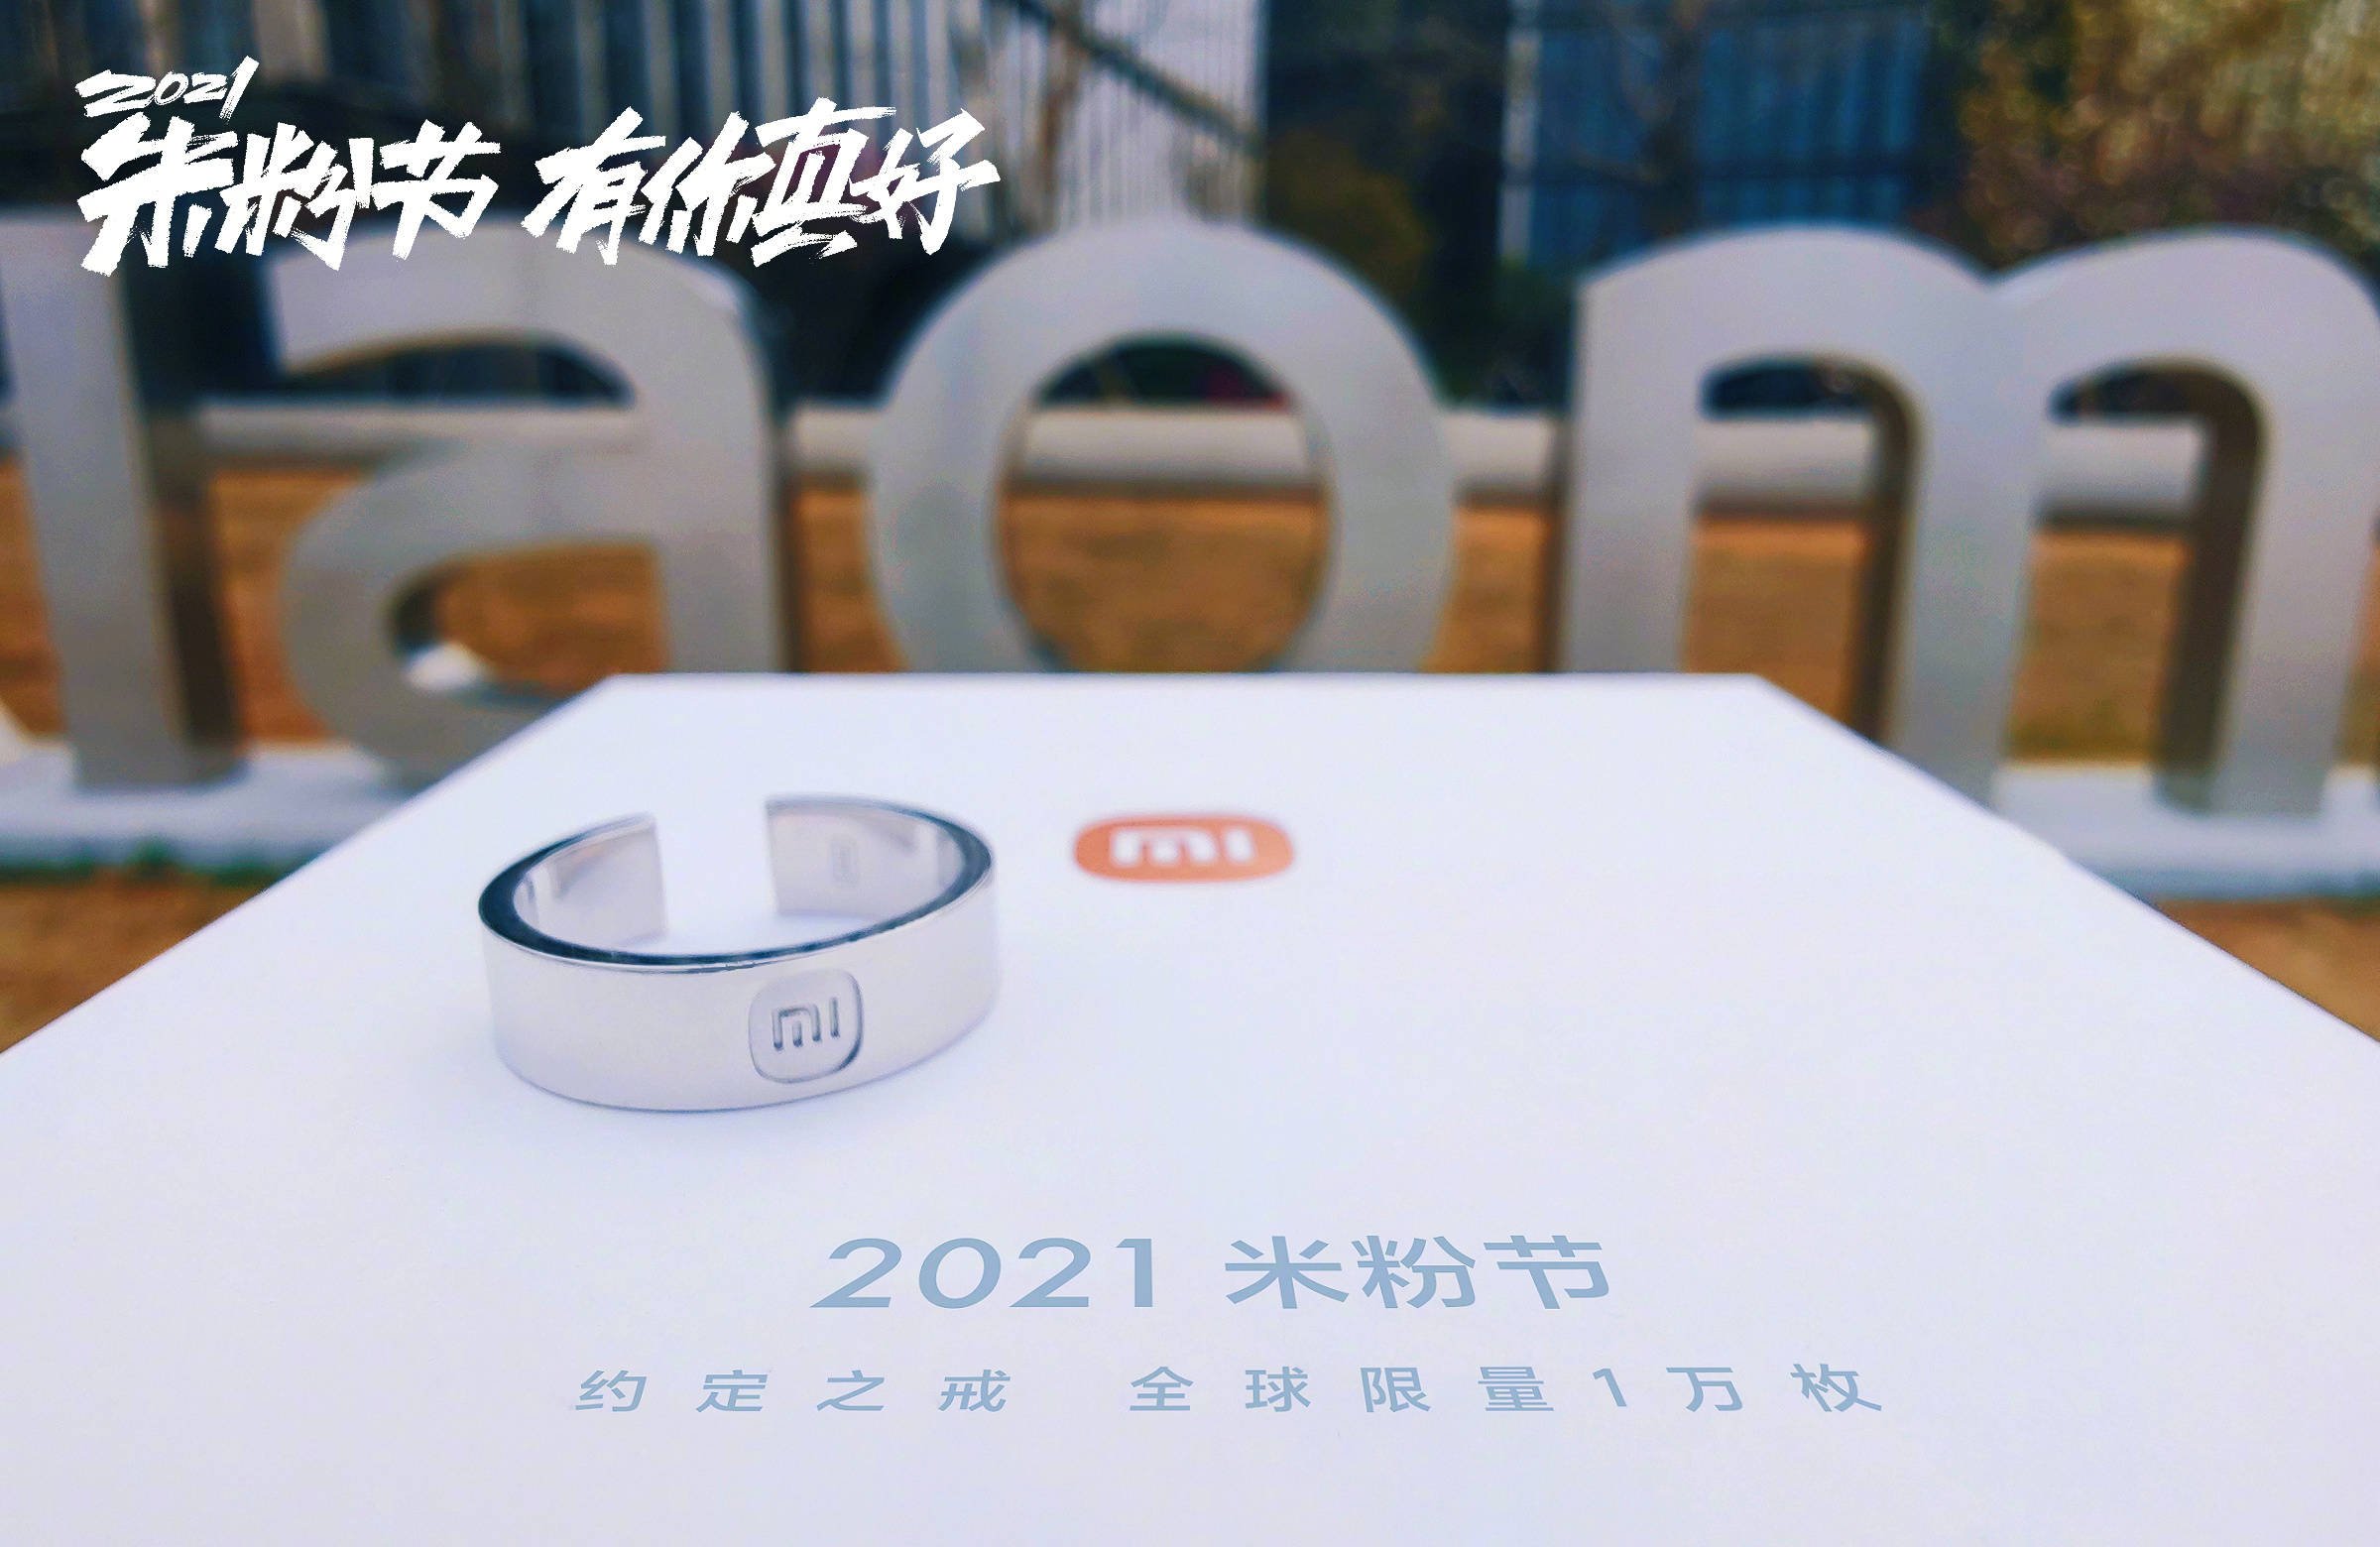 Dies ist der limitierte Ring, den Xiaomi beim Mi Fan Festival 2021 auf den Markt gebracht hat. News Xiaomi Addicts